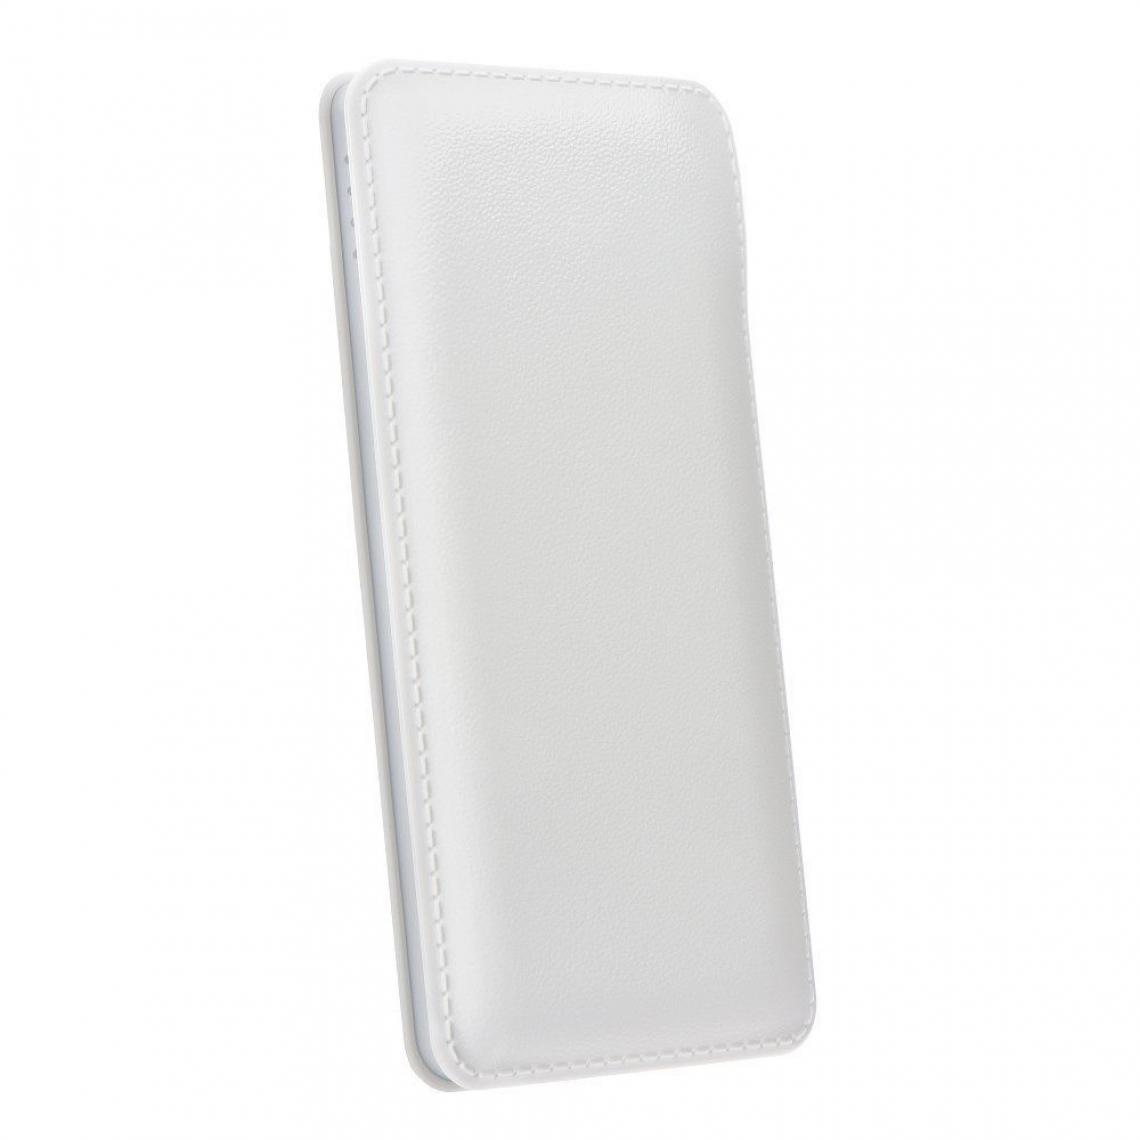 Ozzzo - Chargeur batterie externe 20000 mAh powerbank ozzzo blanc pour Teclast X4 - Autres accessoires smartphone